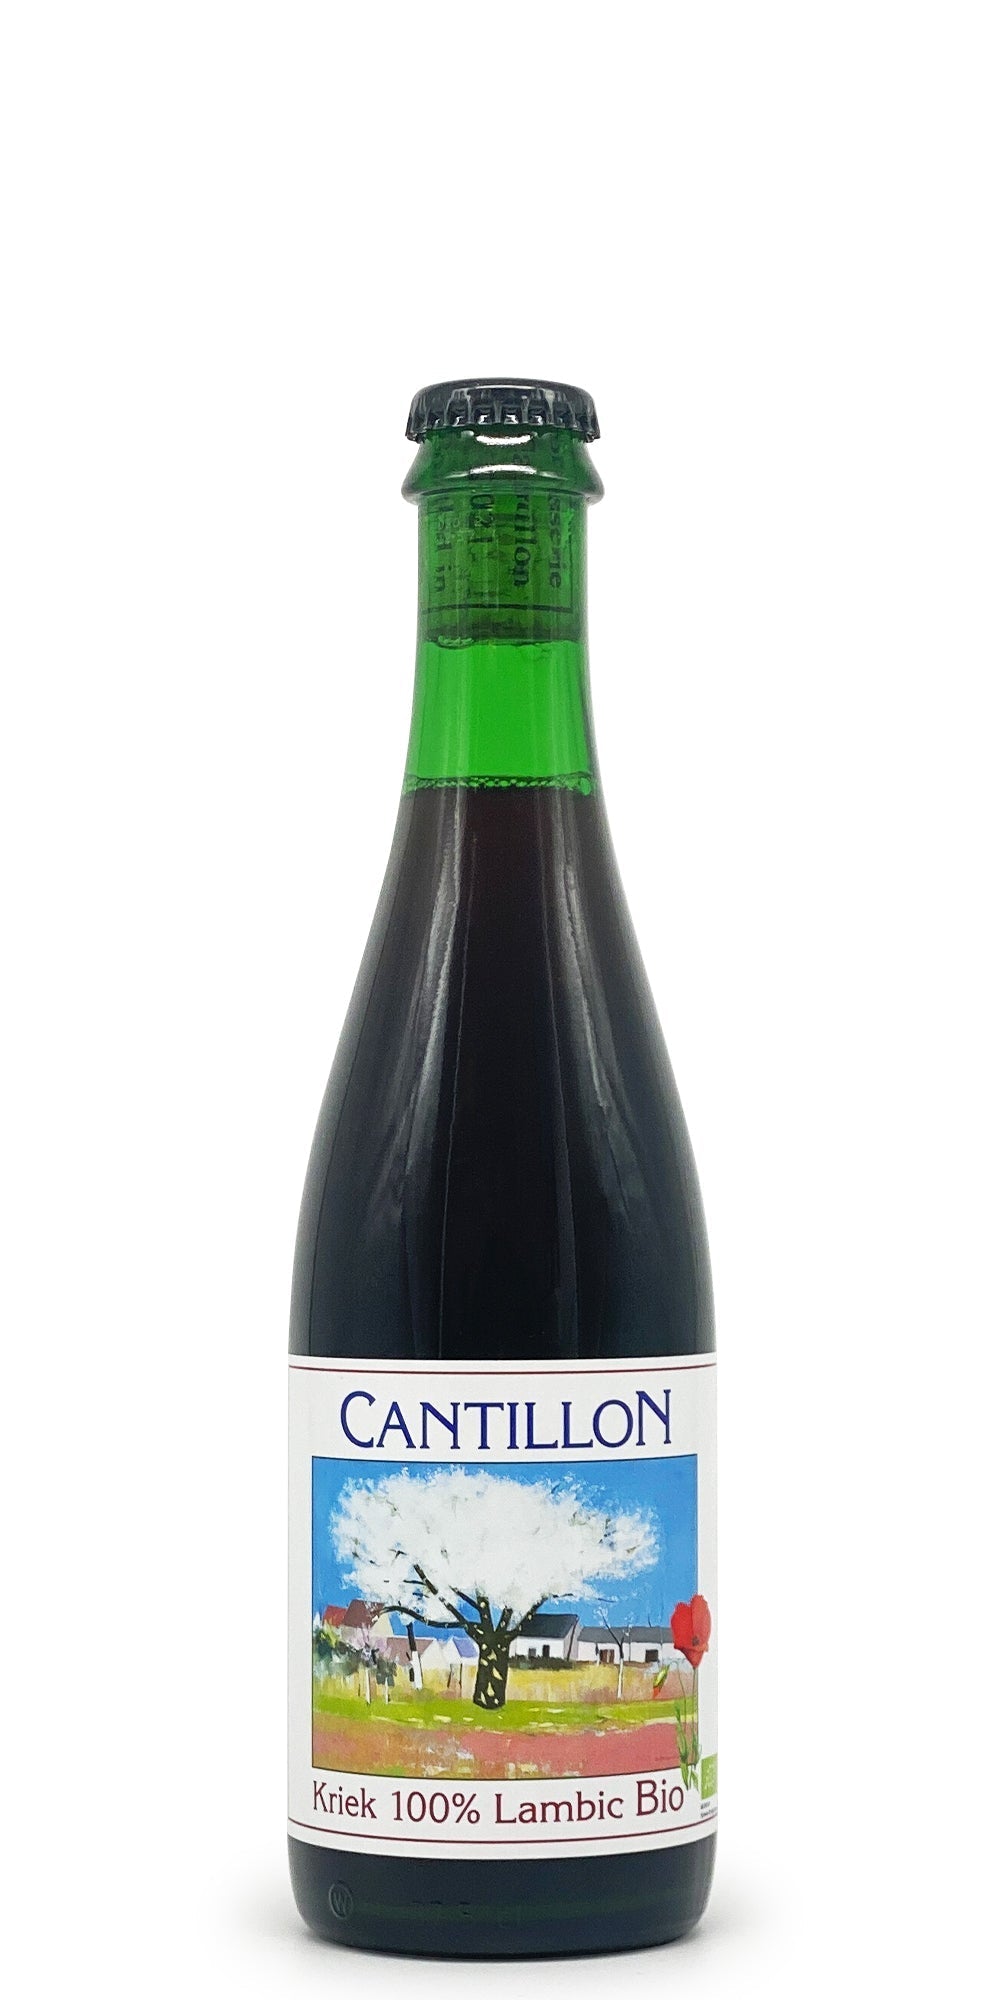 Cantillon - Kriek (2015) (Subscriber only)